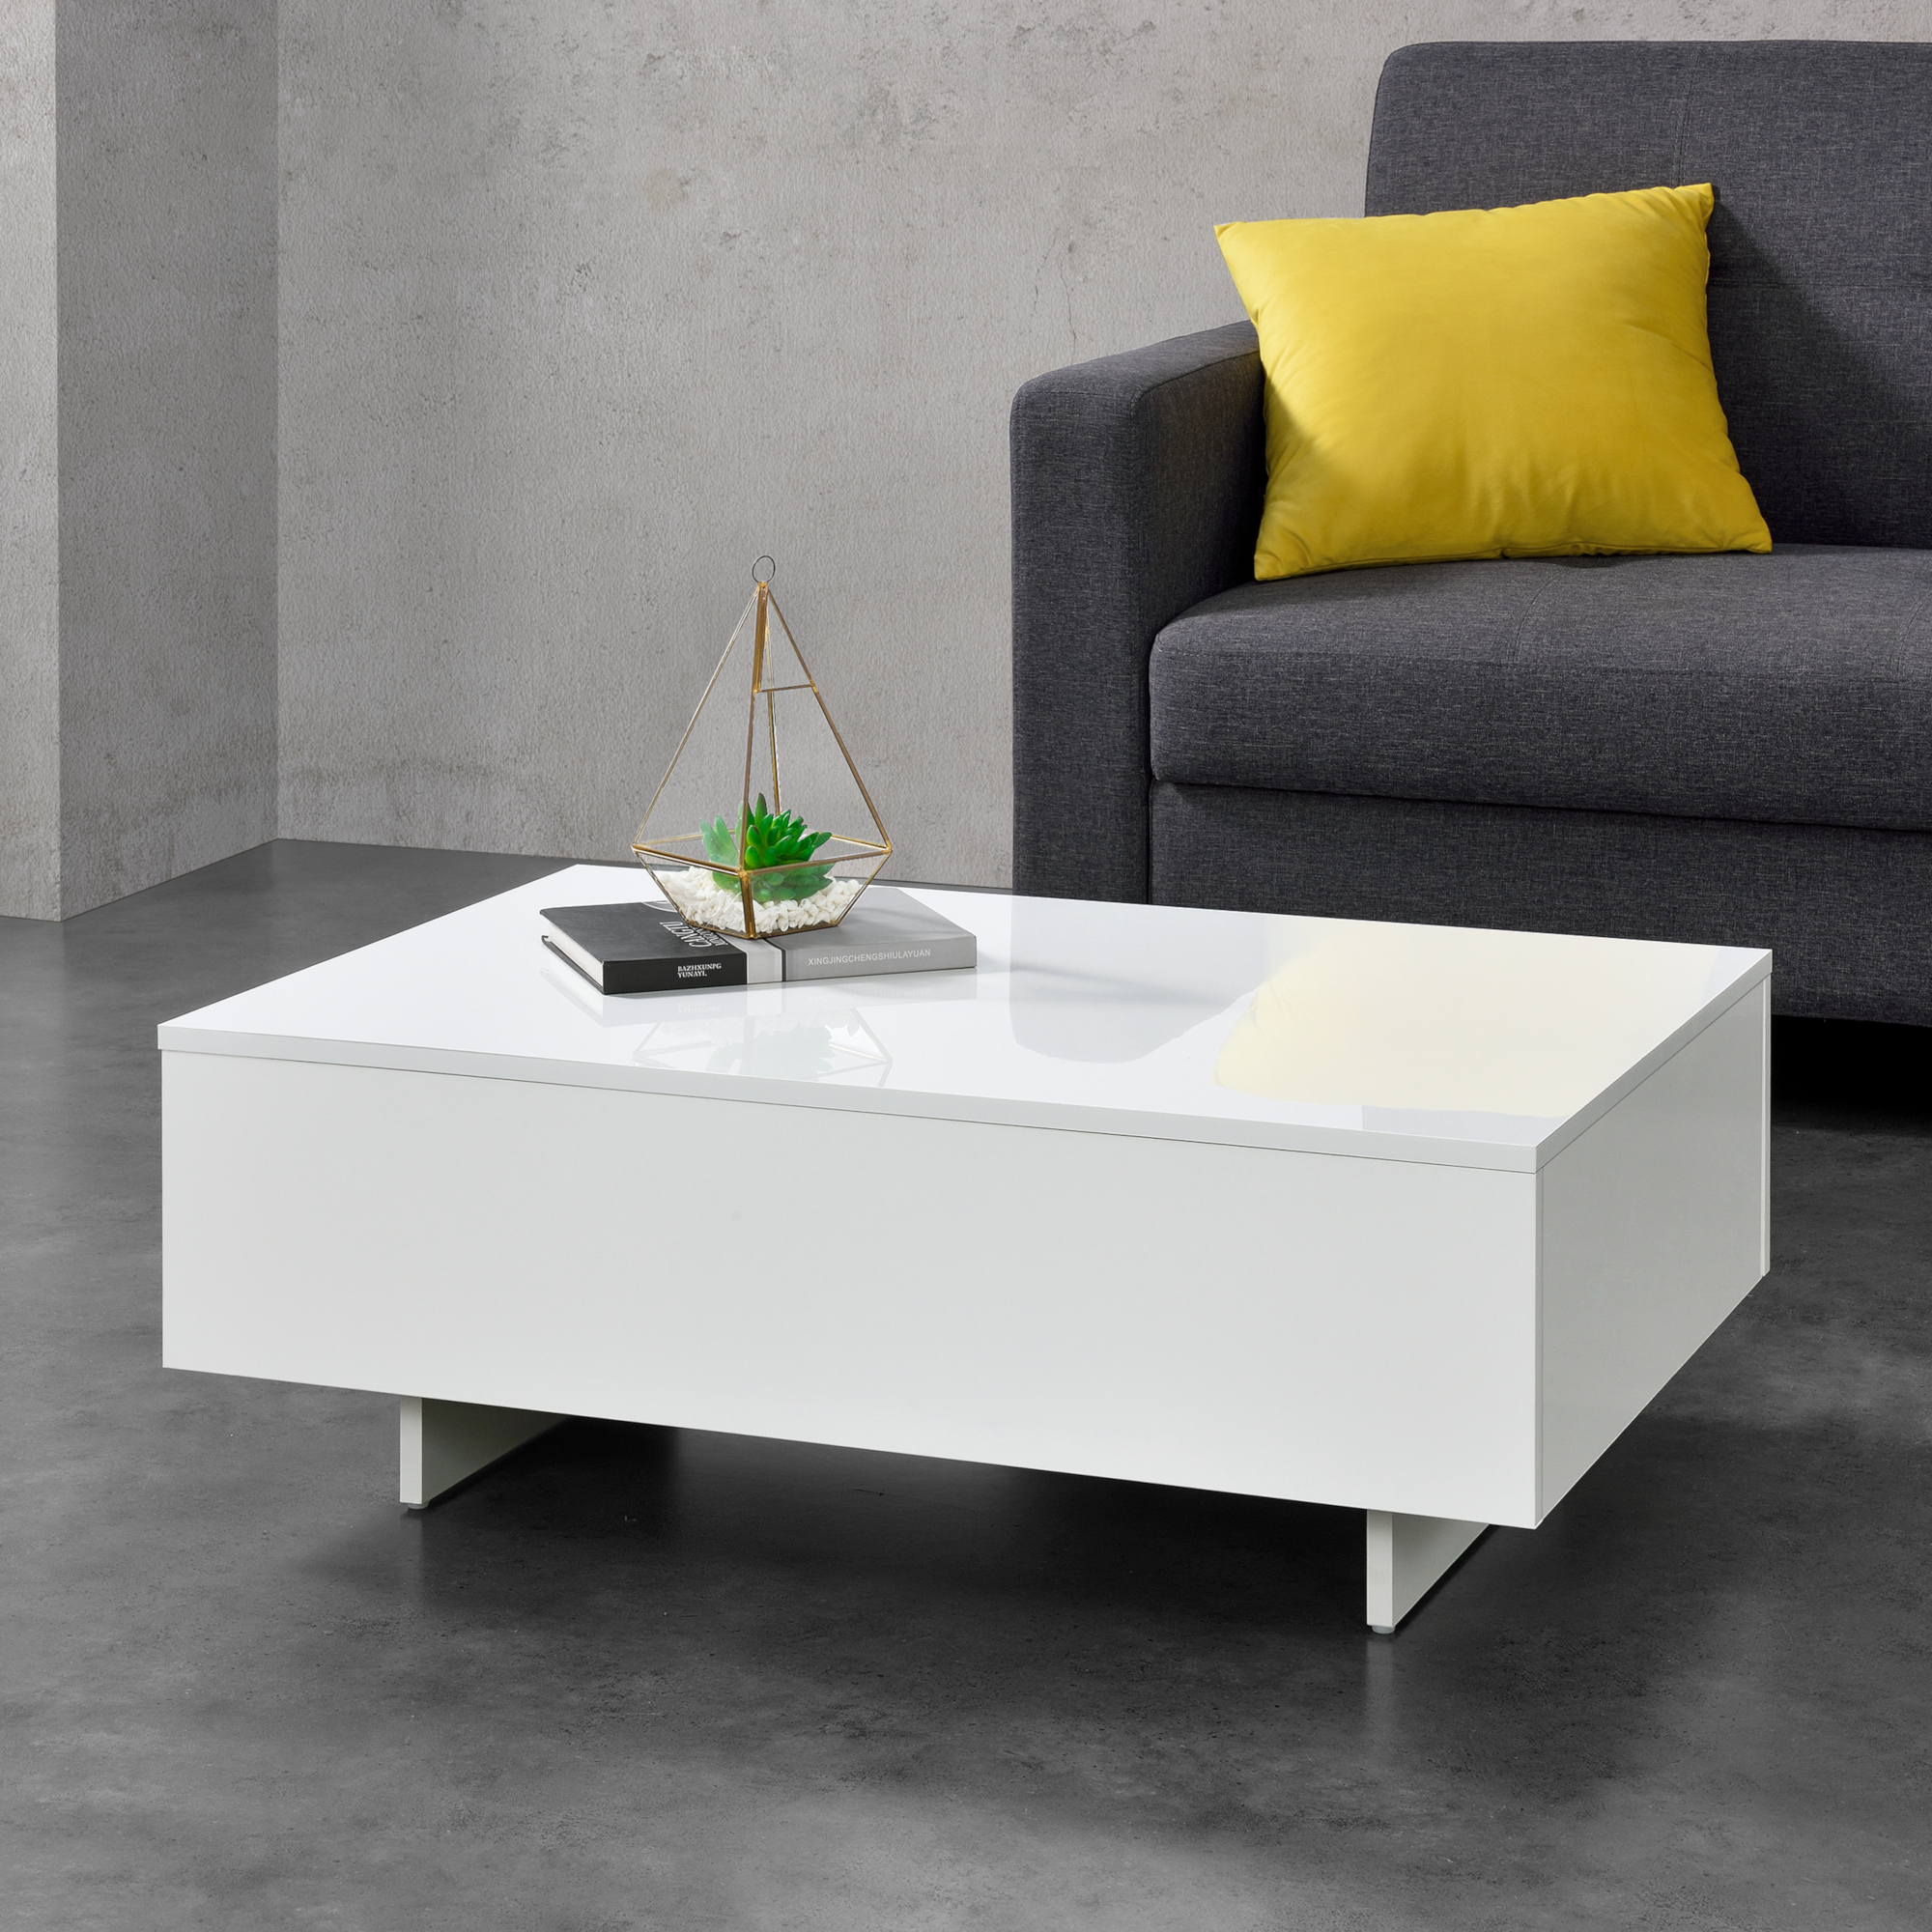 Couchtisch Tisch Beistelltisch Wohnzimmertisch Sofatisch Möbel 85x55x31cm Weiß eBay